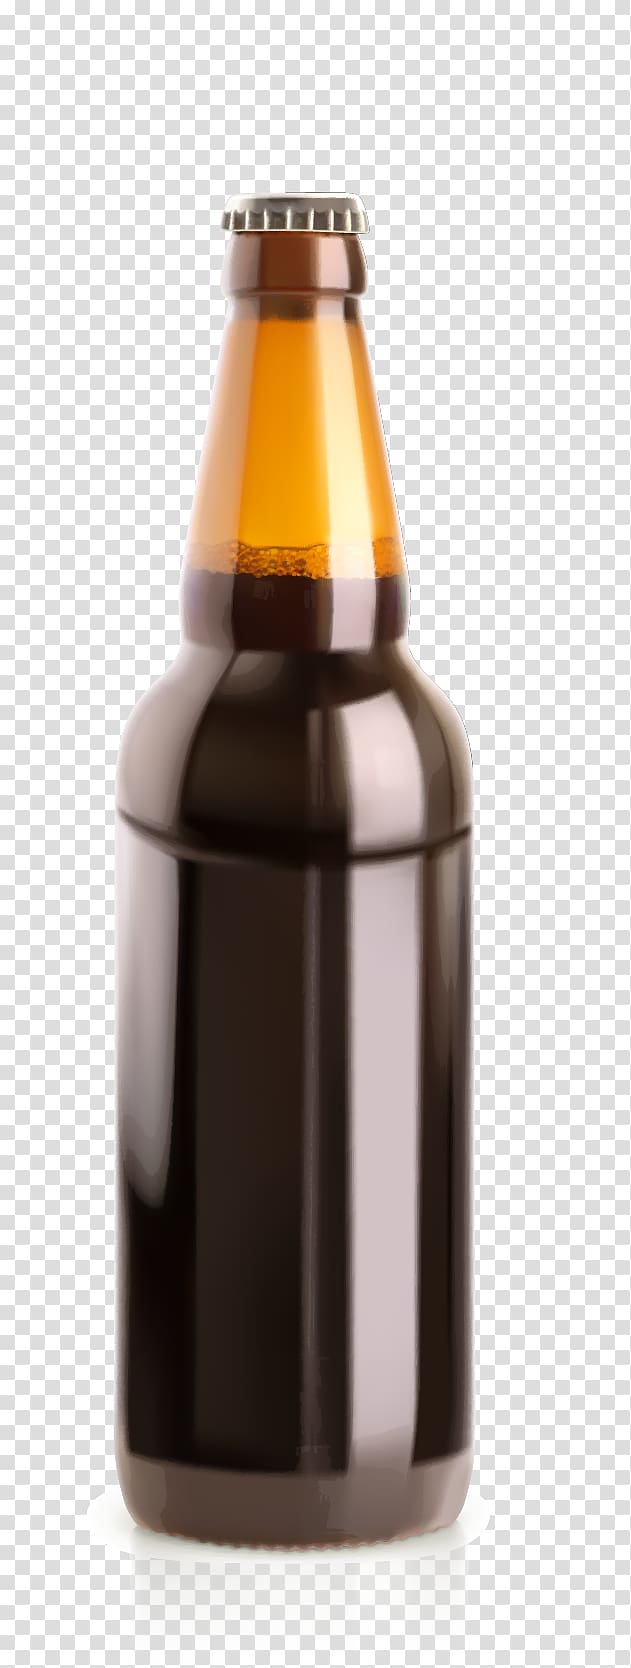 Beer Bottle Glass Illustration, Sesame oil bottles material transparent background PNG clipart